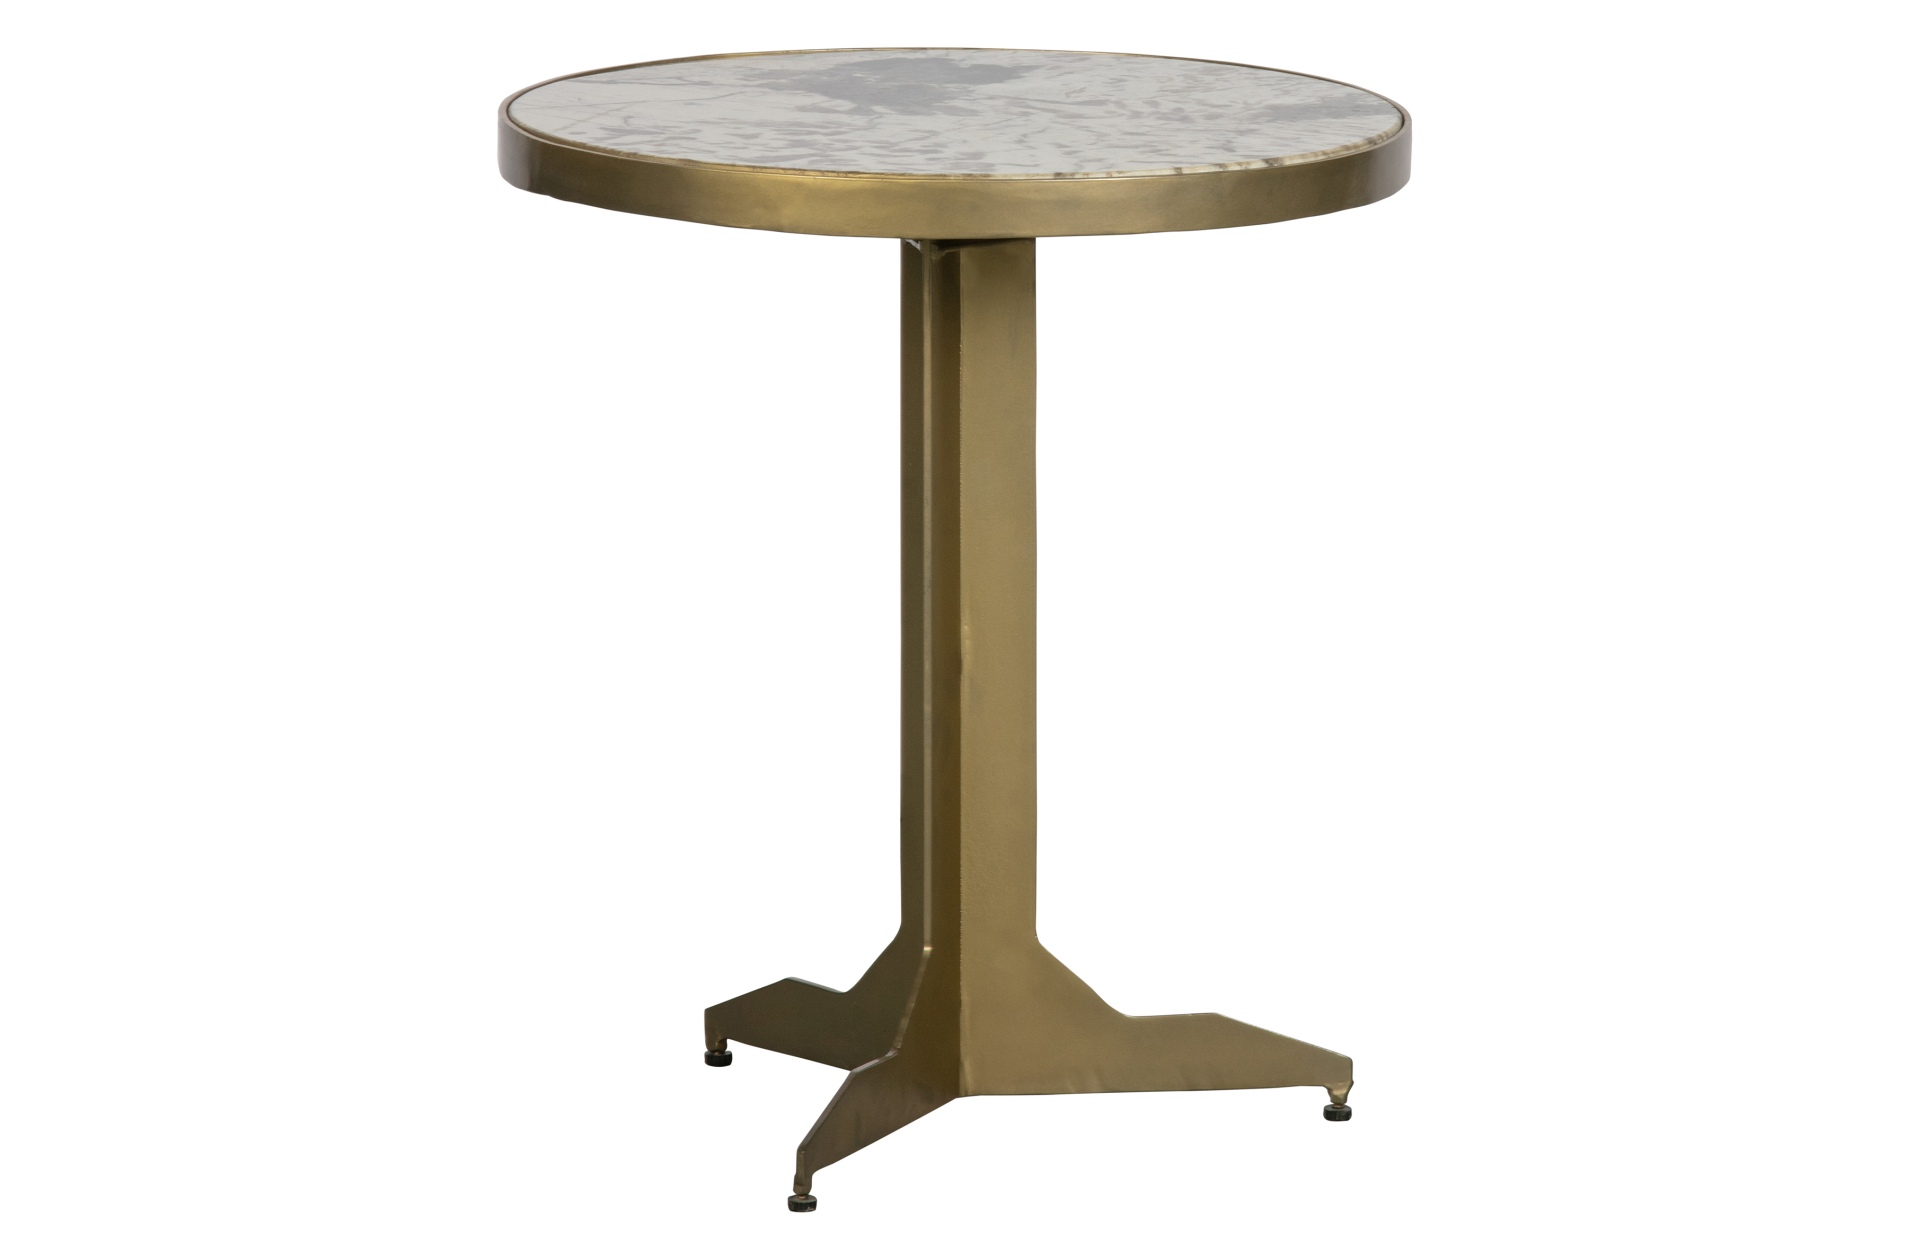 Der Beistelltisch Cute überzeugt mit seinem besonderem Design. Die Tischplatte wurde aus Marmor gefertigt und das Gestell in goldener Farbe ist aus Metall.